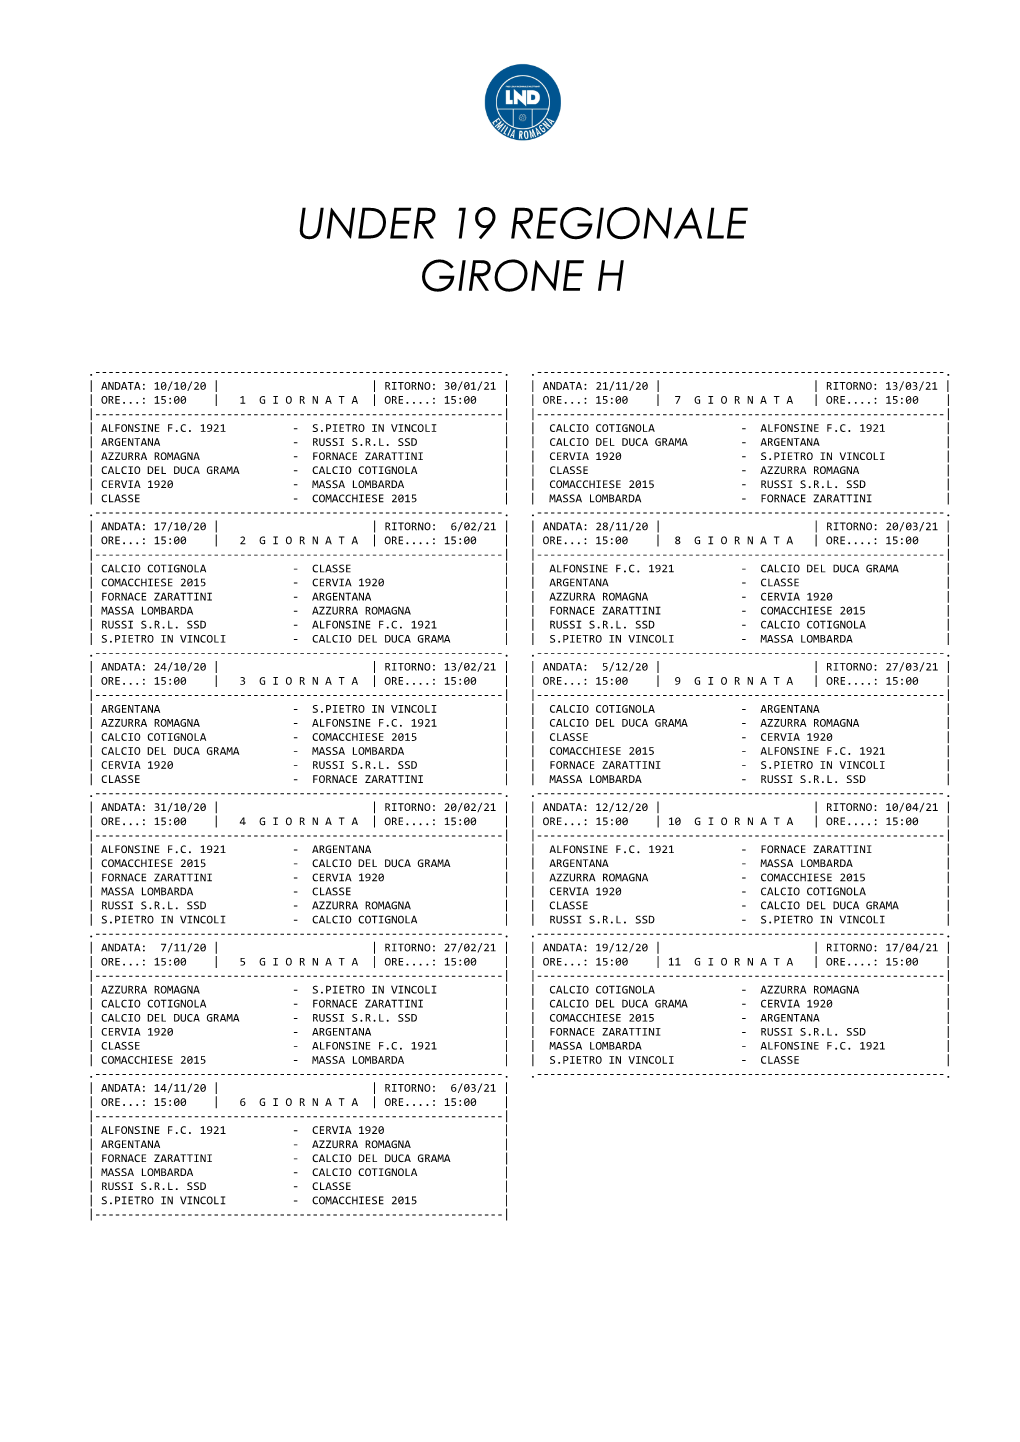 Under 19 Regionale Girone H